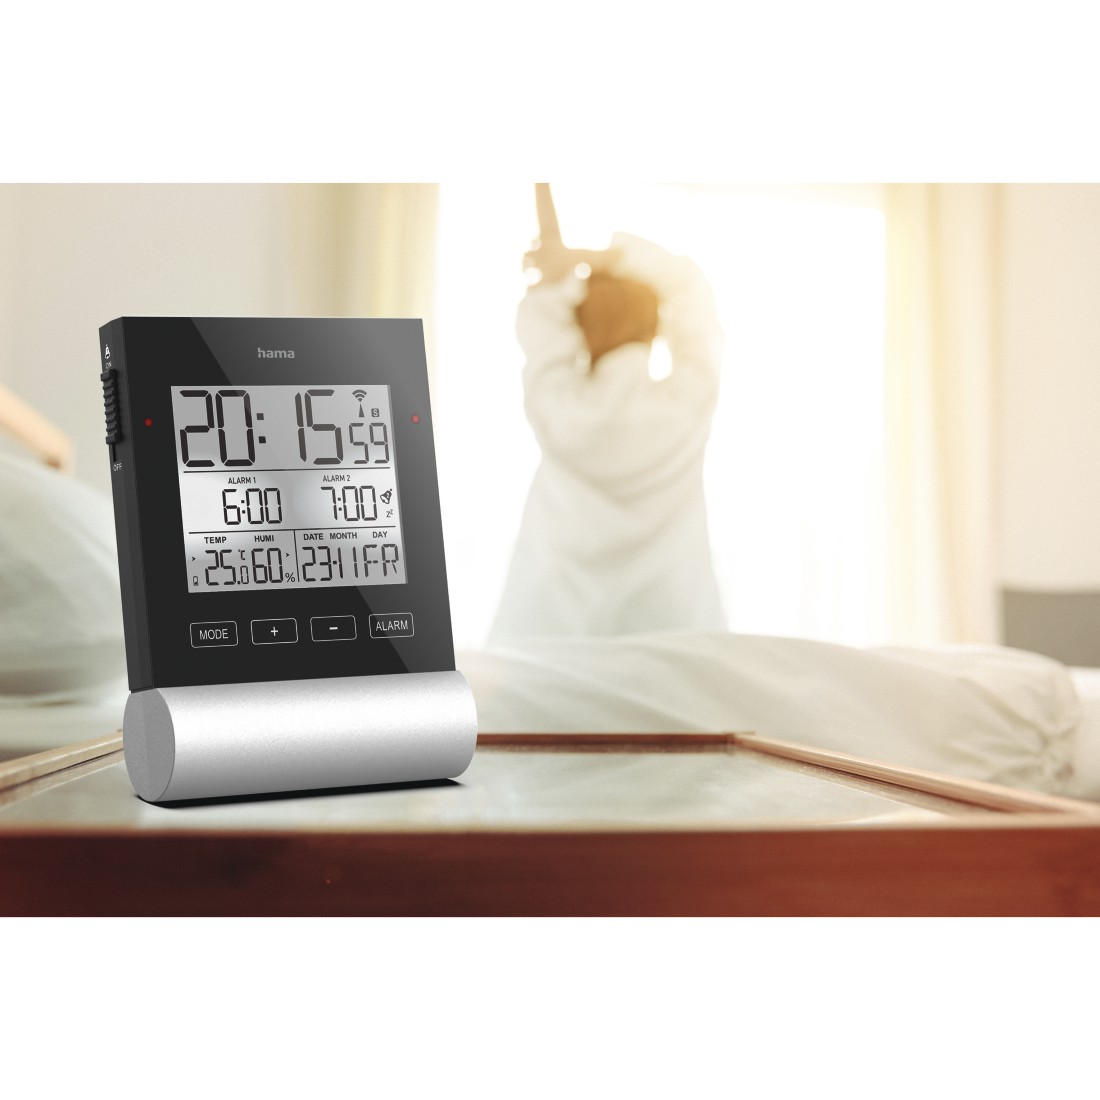 Digital Alarm Wecker Tischuhr LCD Wecker mit Temperaturanzeige und Kalender Neu 